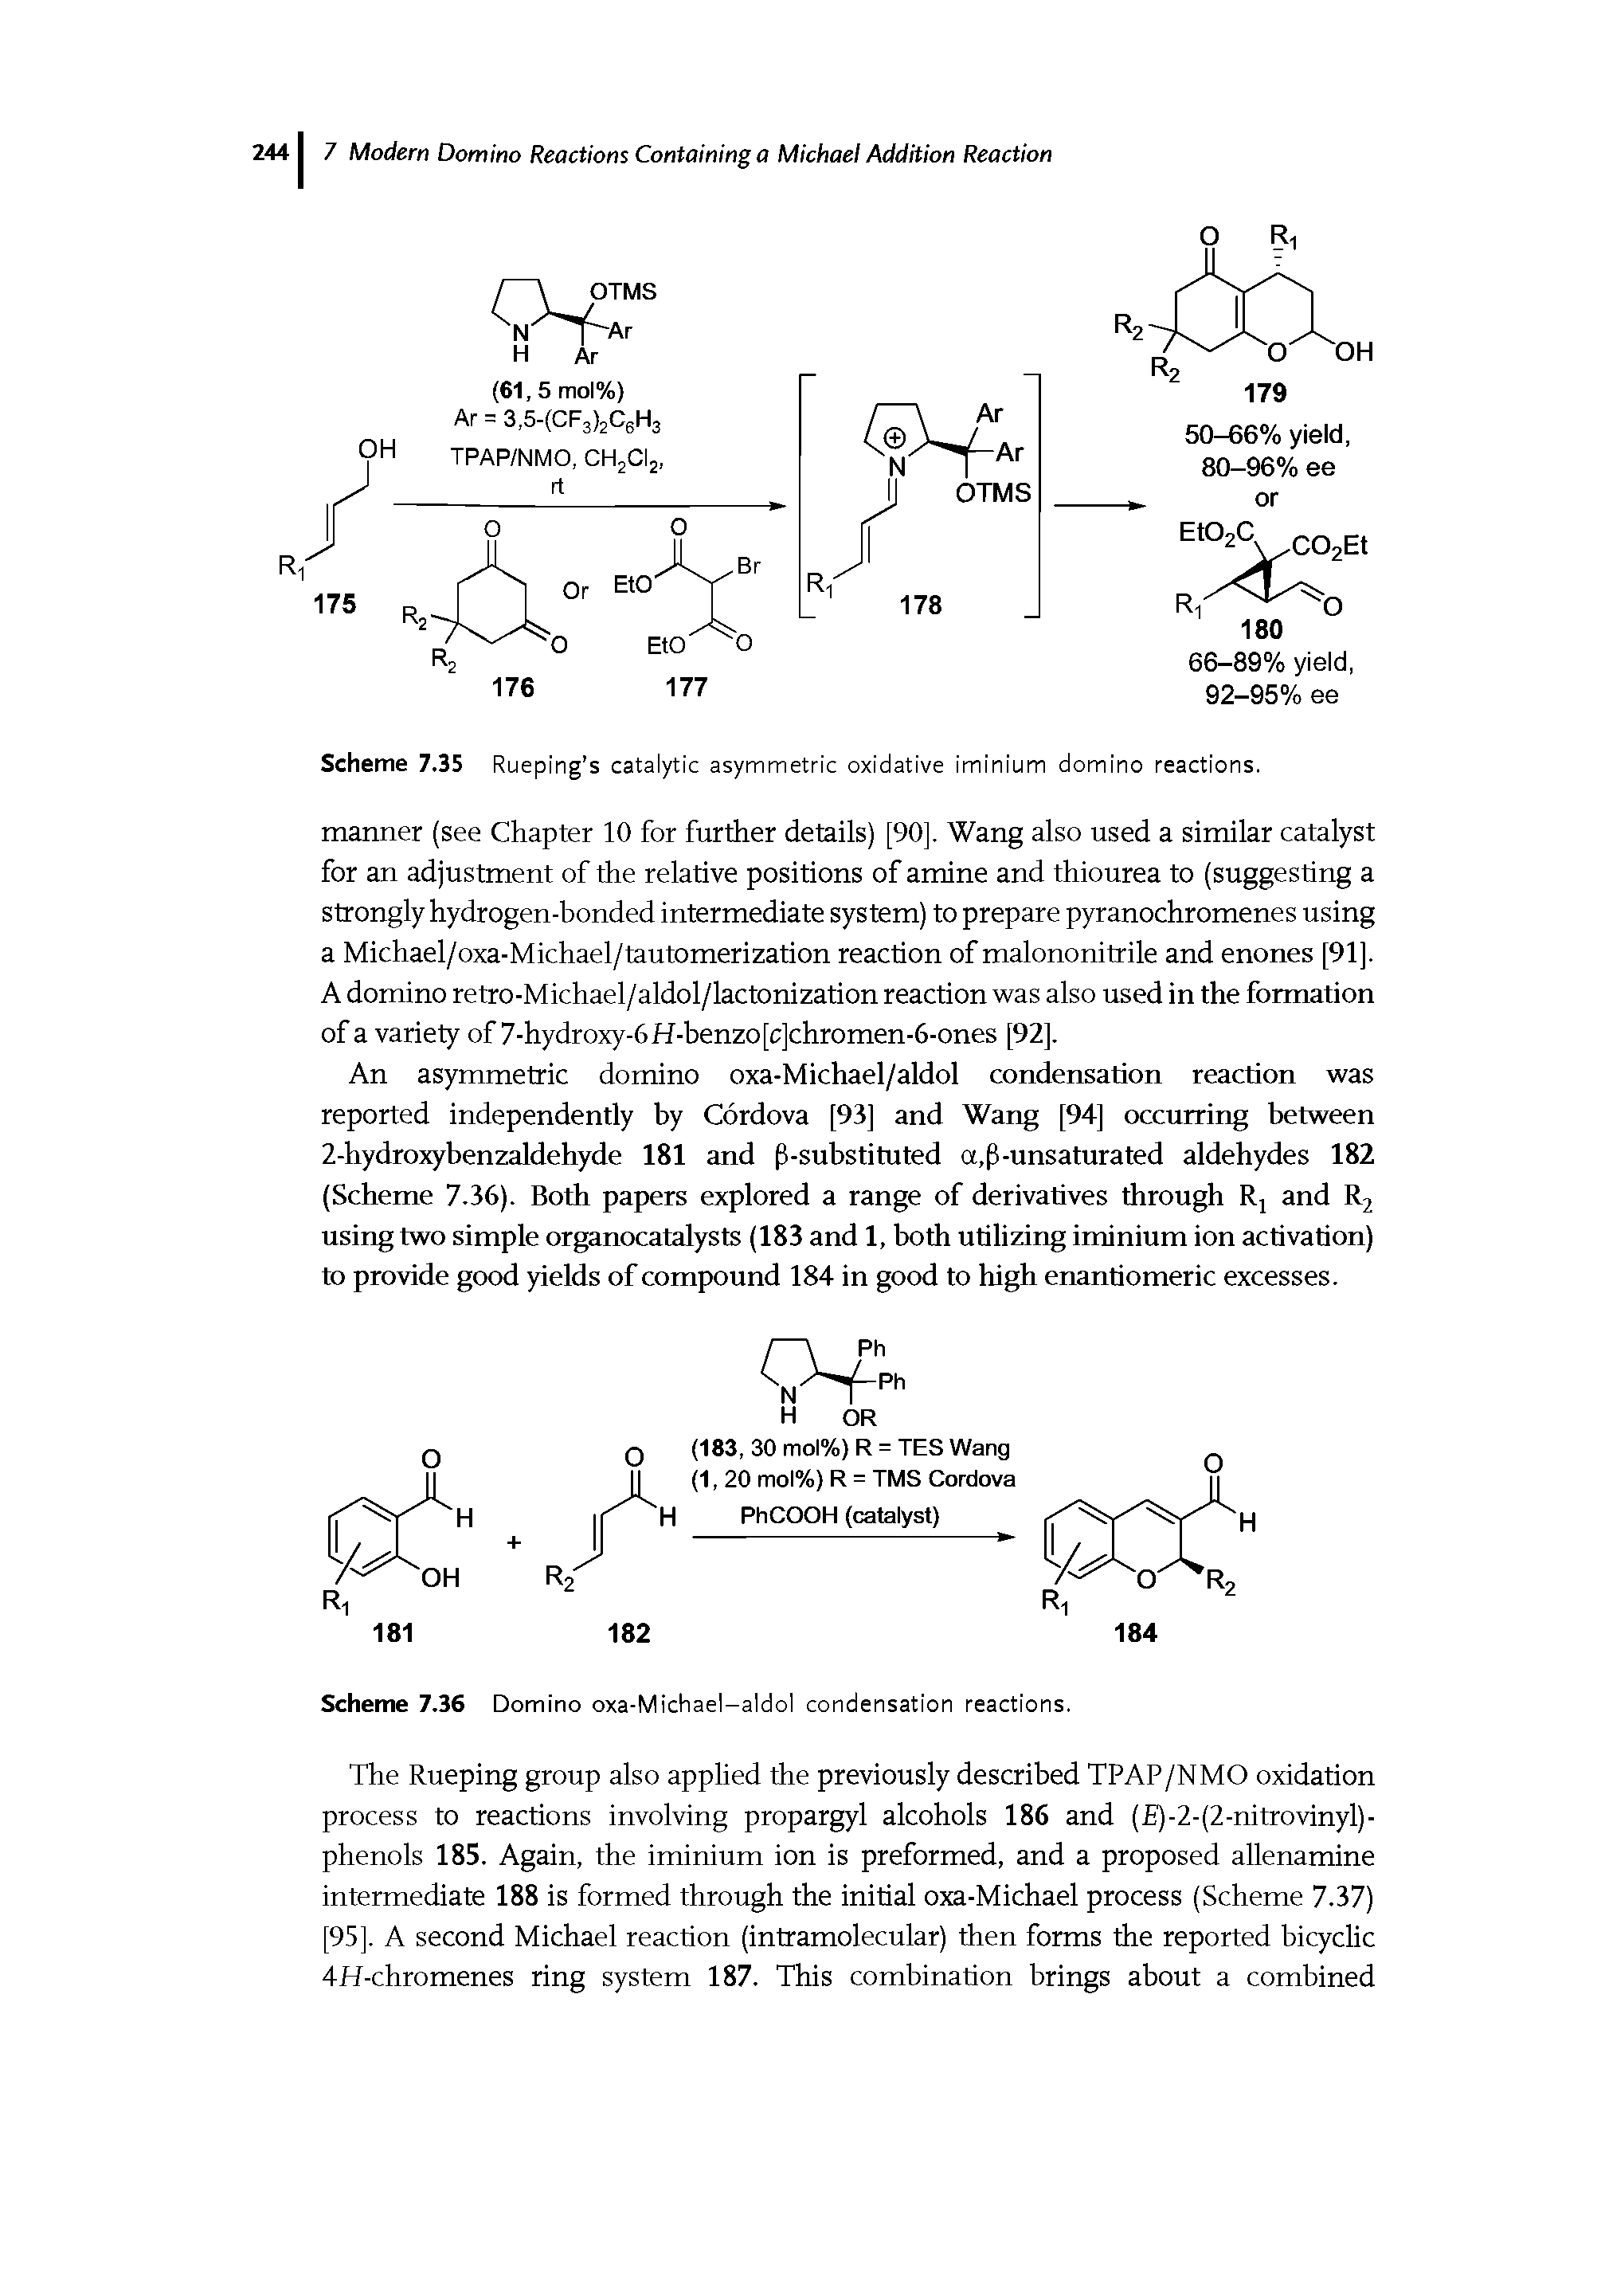 Scheme 7.36 Domino oxa-Michael-aldol condensation reactions.